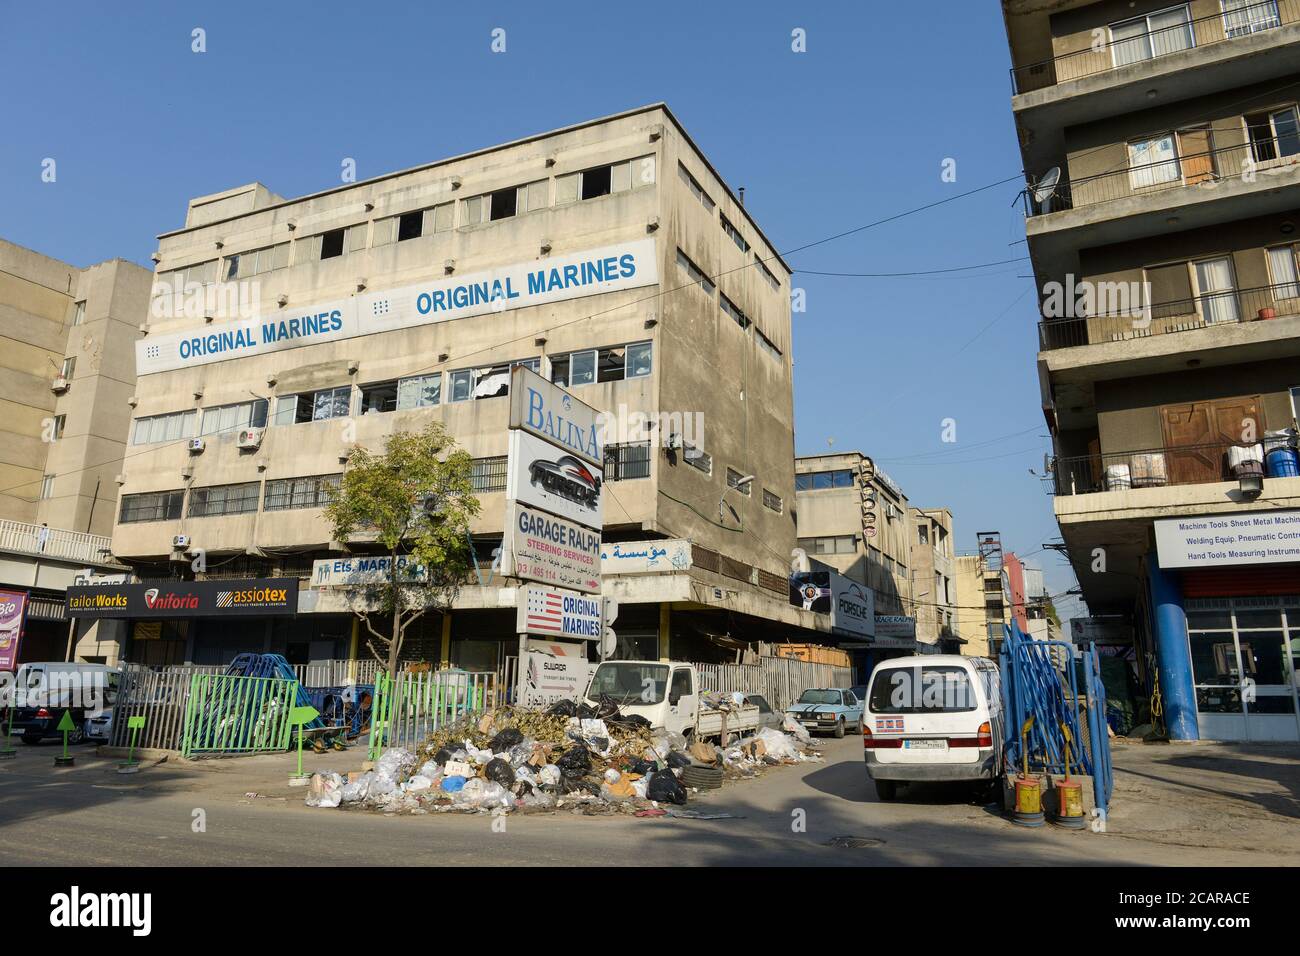 LIBAN, Beyrouth, pendant 3 semaines les déchets ne sont pas collectés / LIBANON, Beyrouth, seit 3 Monaten wird der Müll nicht abgeholt Banque D'Images